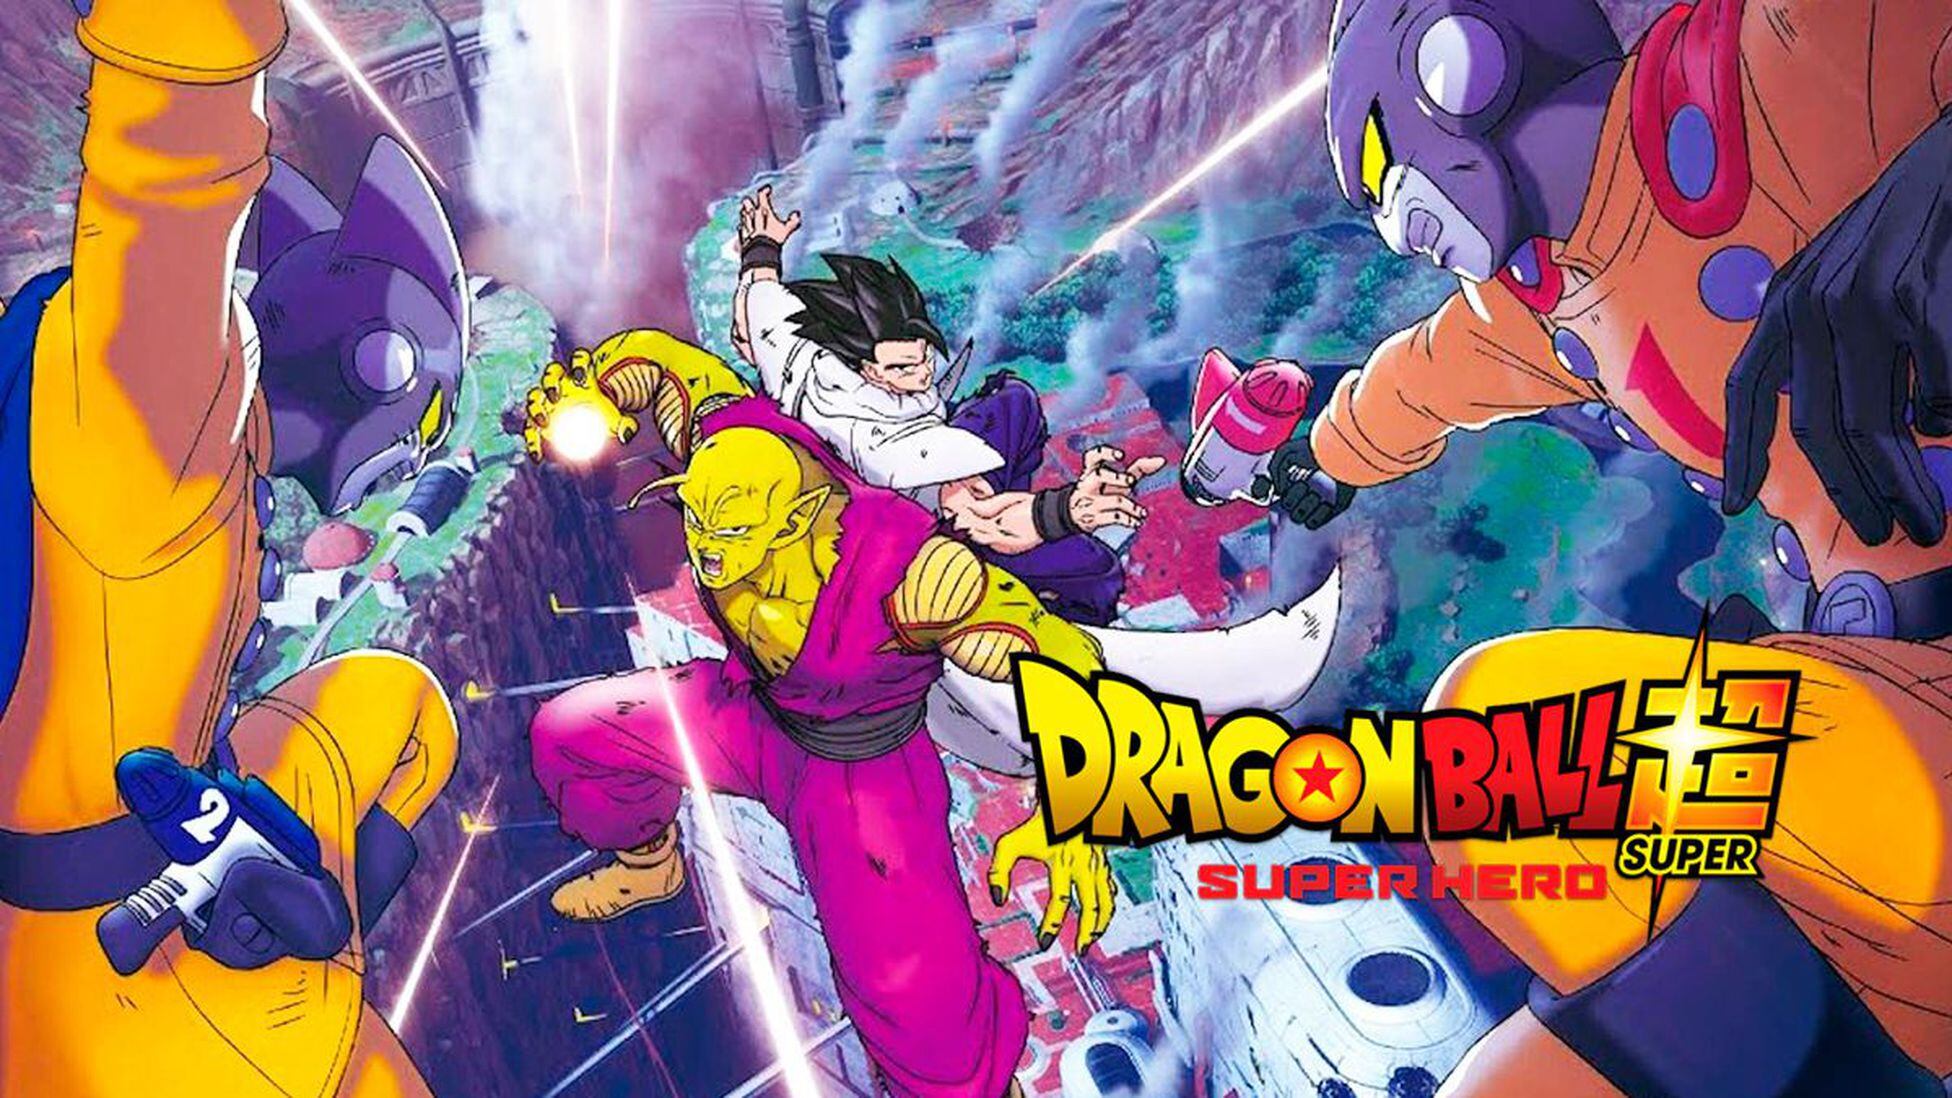 Dragon Ball Super: Super Hero, crítica sin spoilers. Una oda a la familia -  Meristation